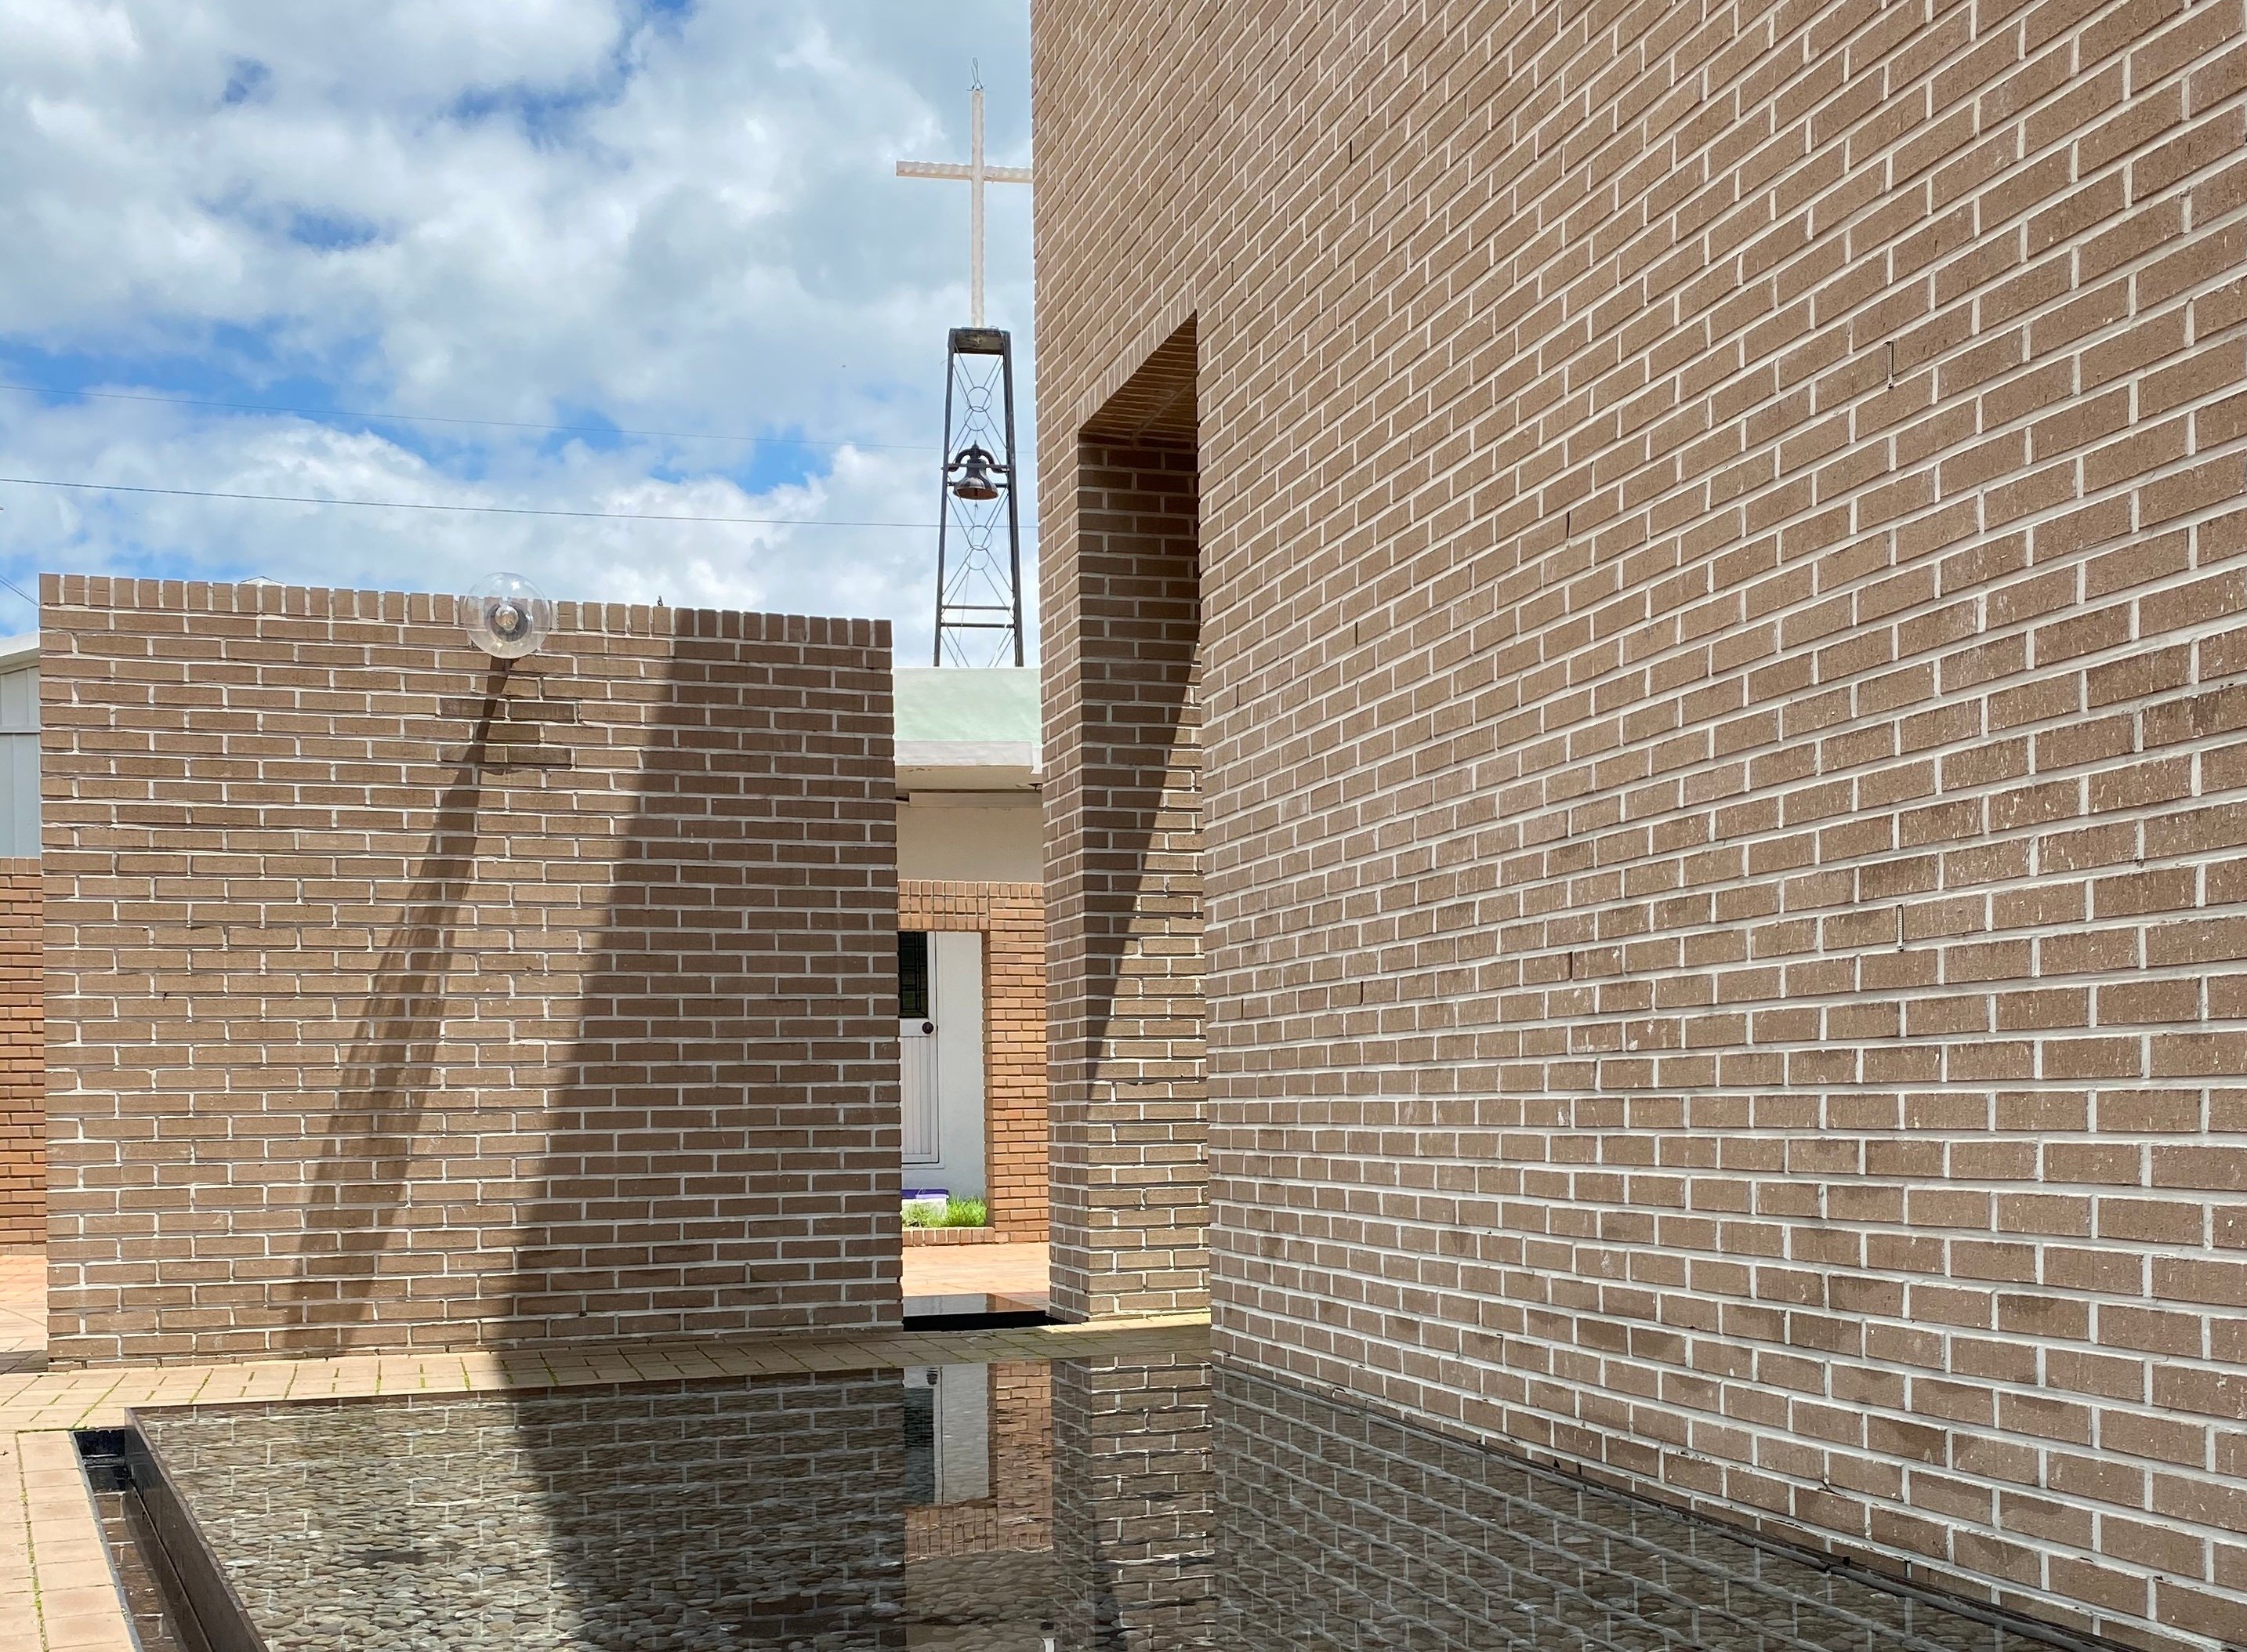 건축가 승효상이 무료로 설계한 경산의 15평짜리 교회